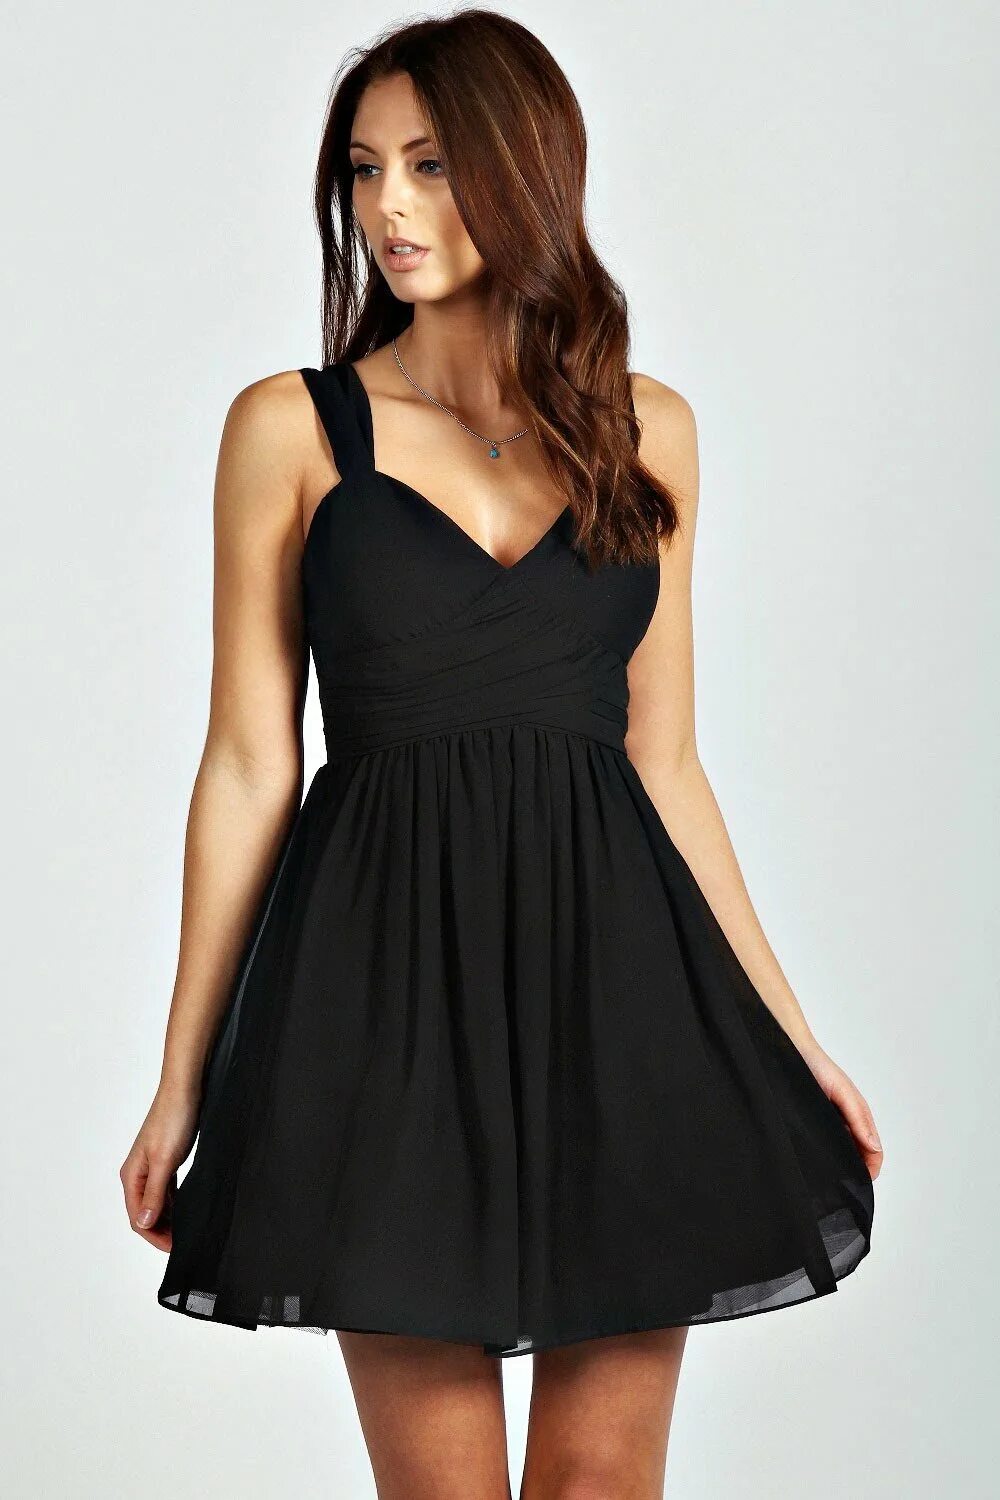 Короткое платье. Платье черное. Платье чёрное кортокое. Черное вечернее платье короткое.